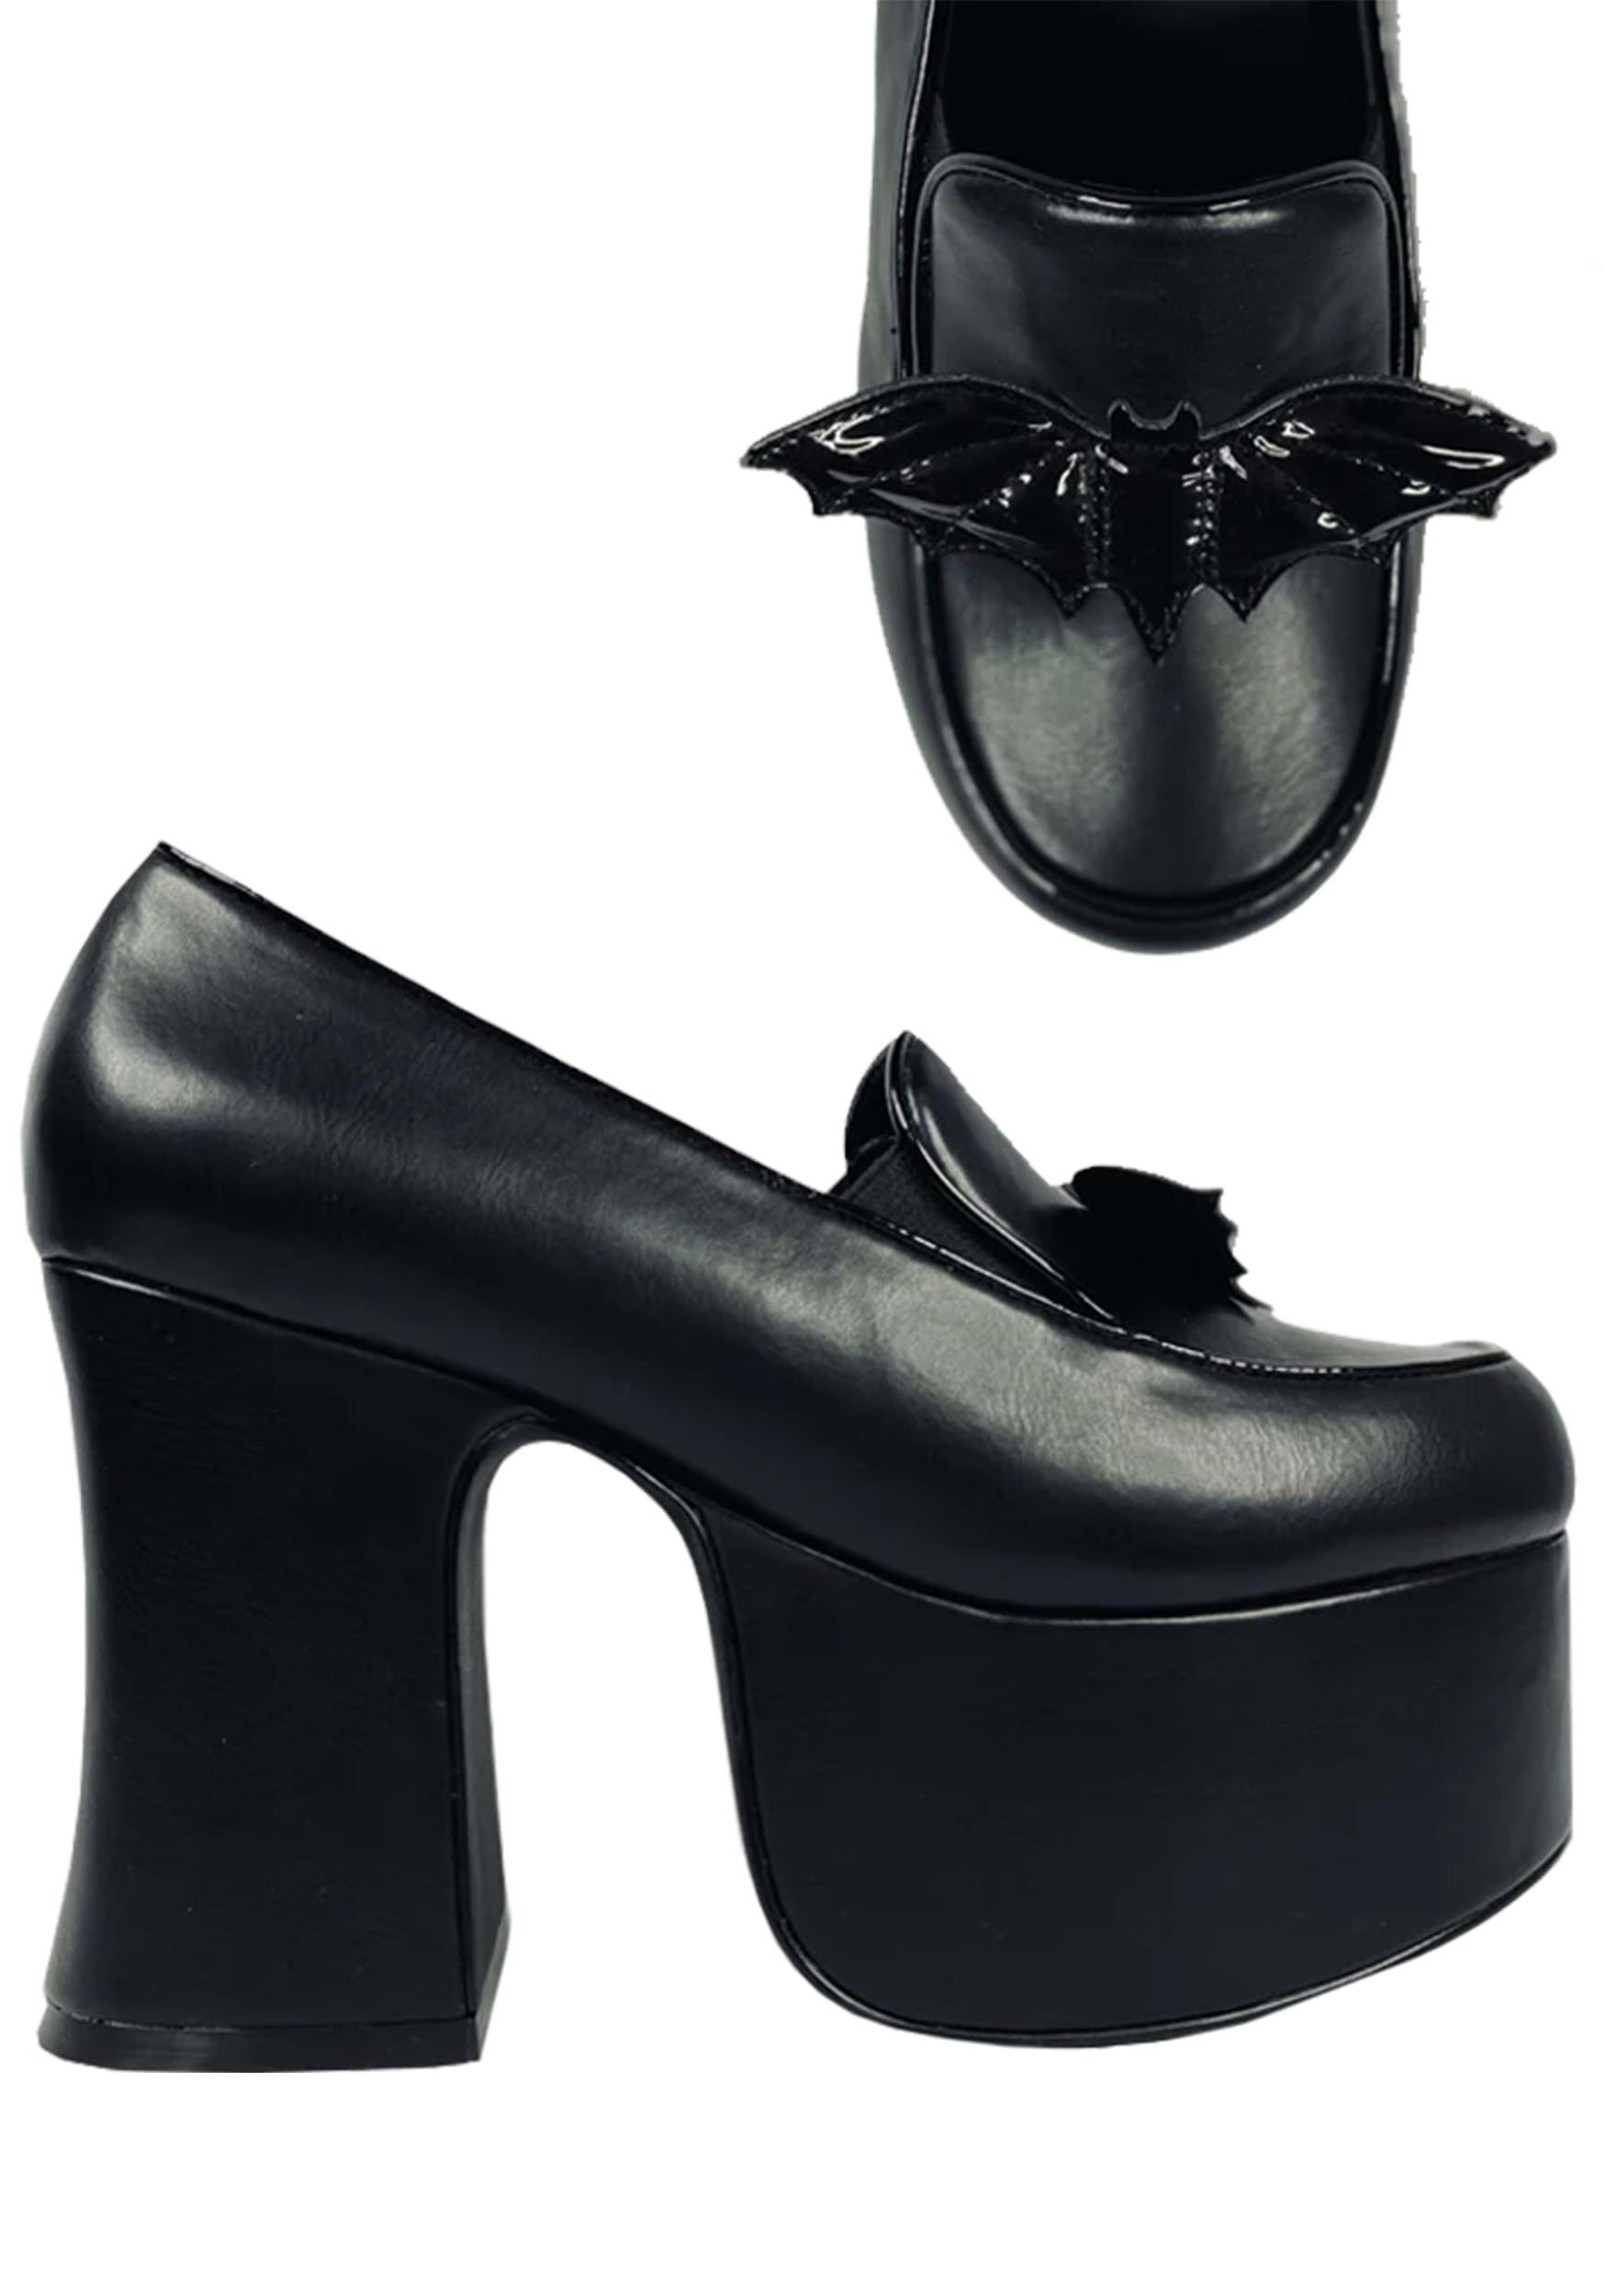 Image of Platform Bat Banshee Heels for Women ID SVBANSHEEHEEL-BAT-8